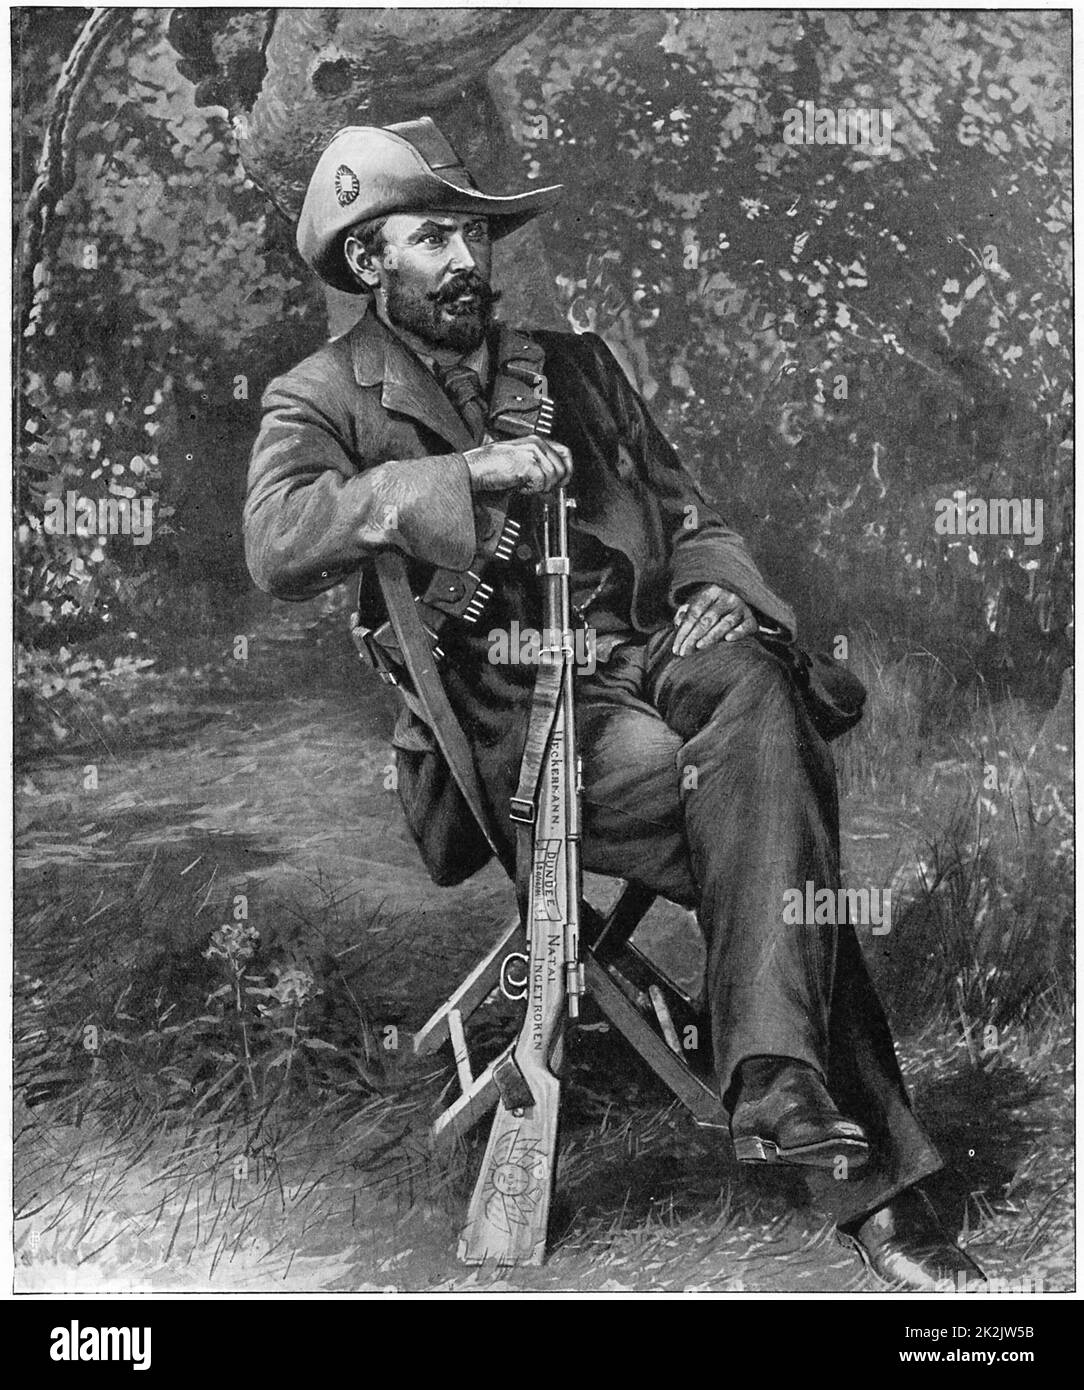 Louis Botha (1862-1919) soldato sudafricano e statista. Comandante in capo delle forze boeriere dal 1900 durante la guerra boeriera del 2nd (1899-1902). Botha con il suo fucile Mauser decorato Foto Stock